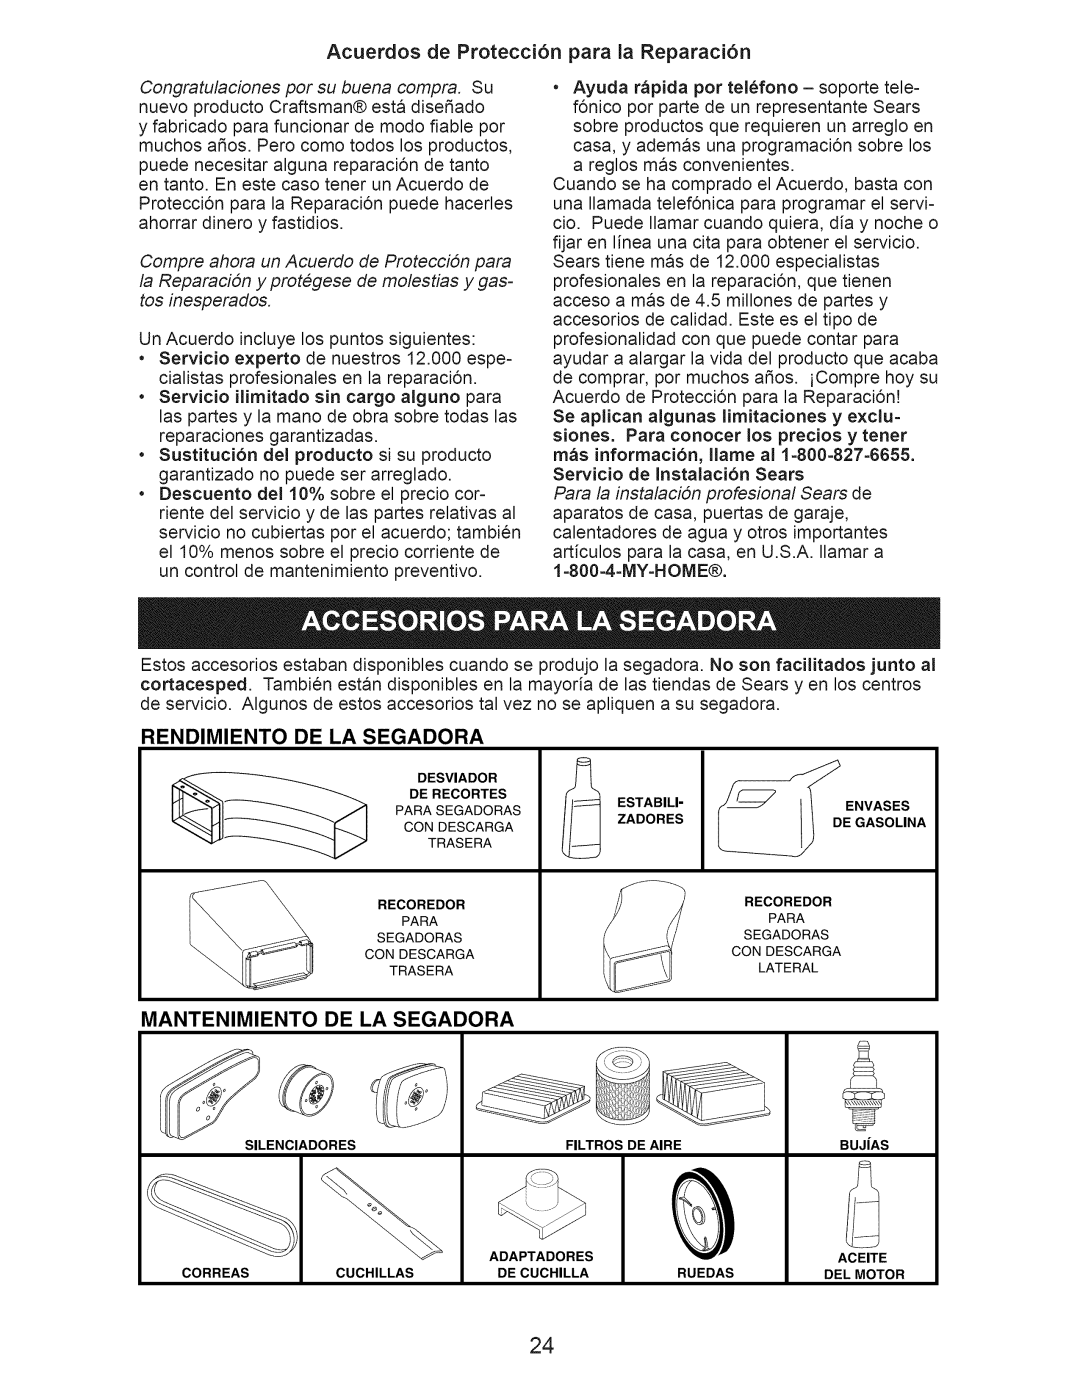 Craftsman 917.374361 Acuerdos de Protecci6n para la Reparaci6n, Rendimiento De La Segadora, Mantenimiento De La Segadora 